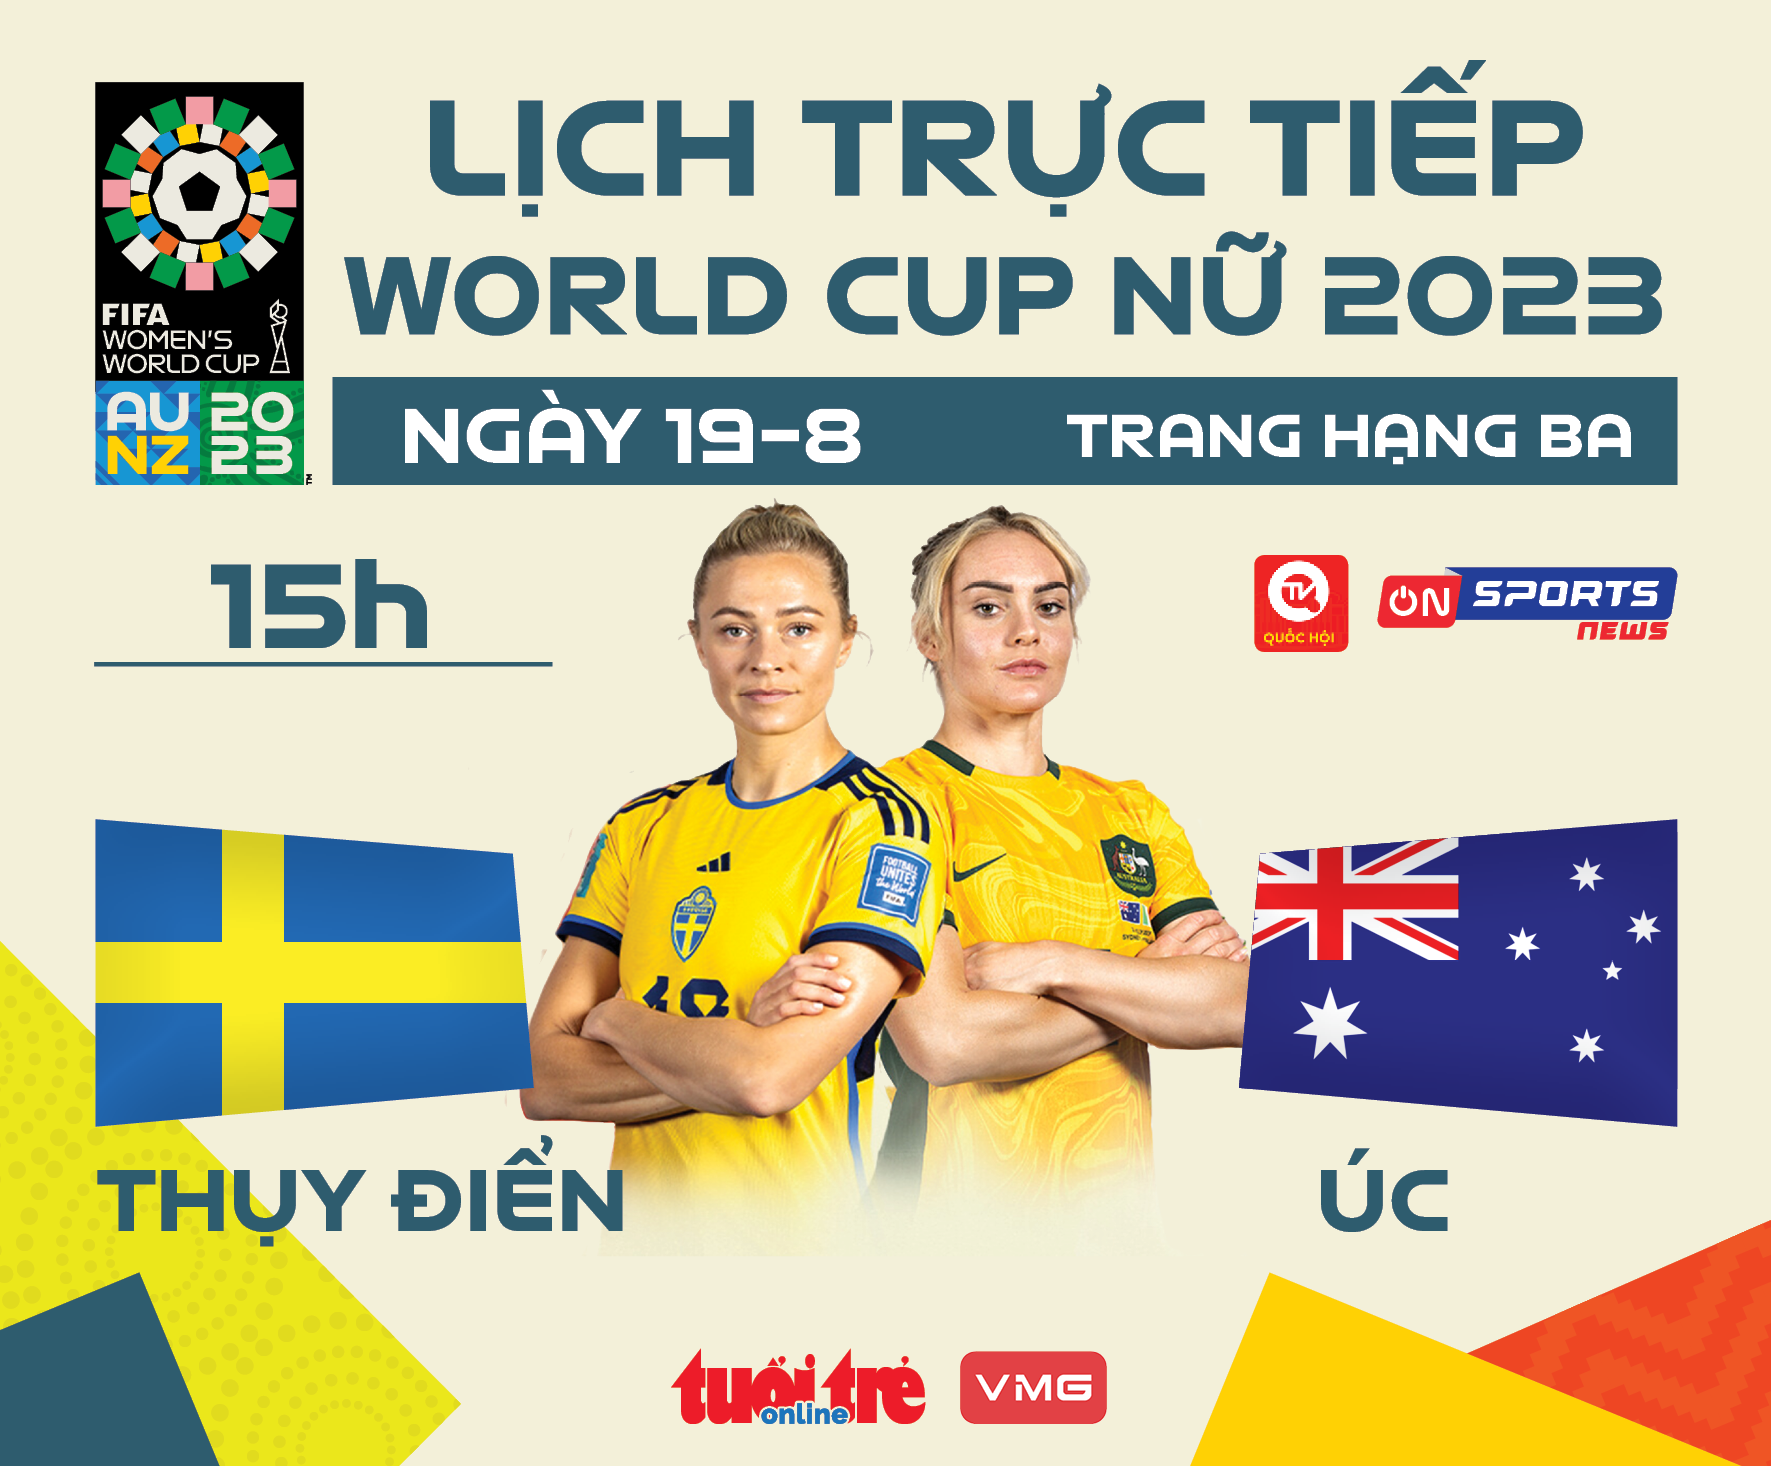 Lịch trực tiếp trận tranh hạng ba World Cup nữ 2023: Thụy Điển - Úc - Ảnh 1.